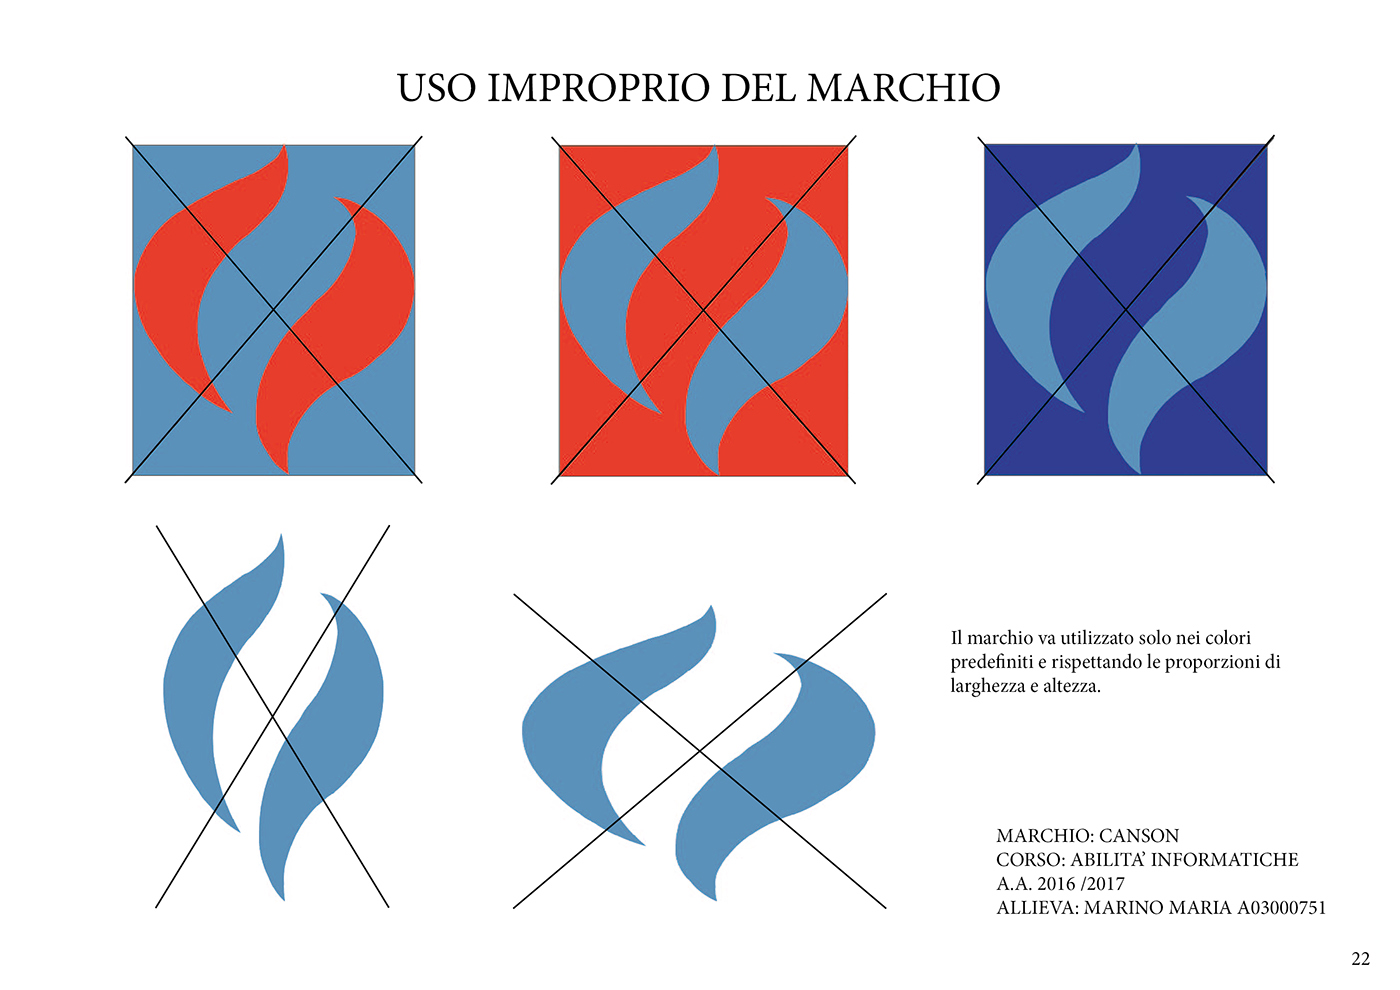 Project canson L.Vanvitelli marchio illustrazione maria marino InDesign brand Illustrator mood